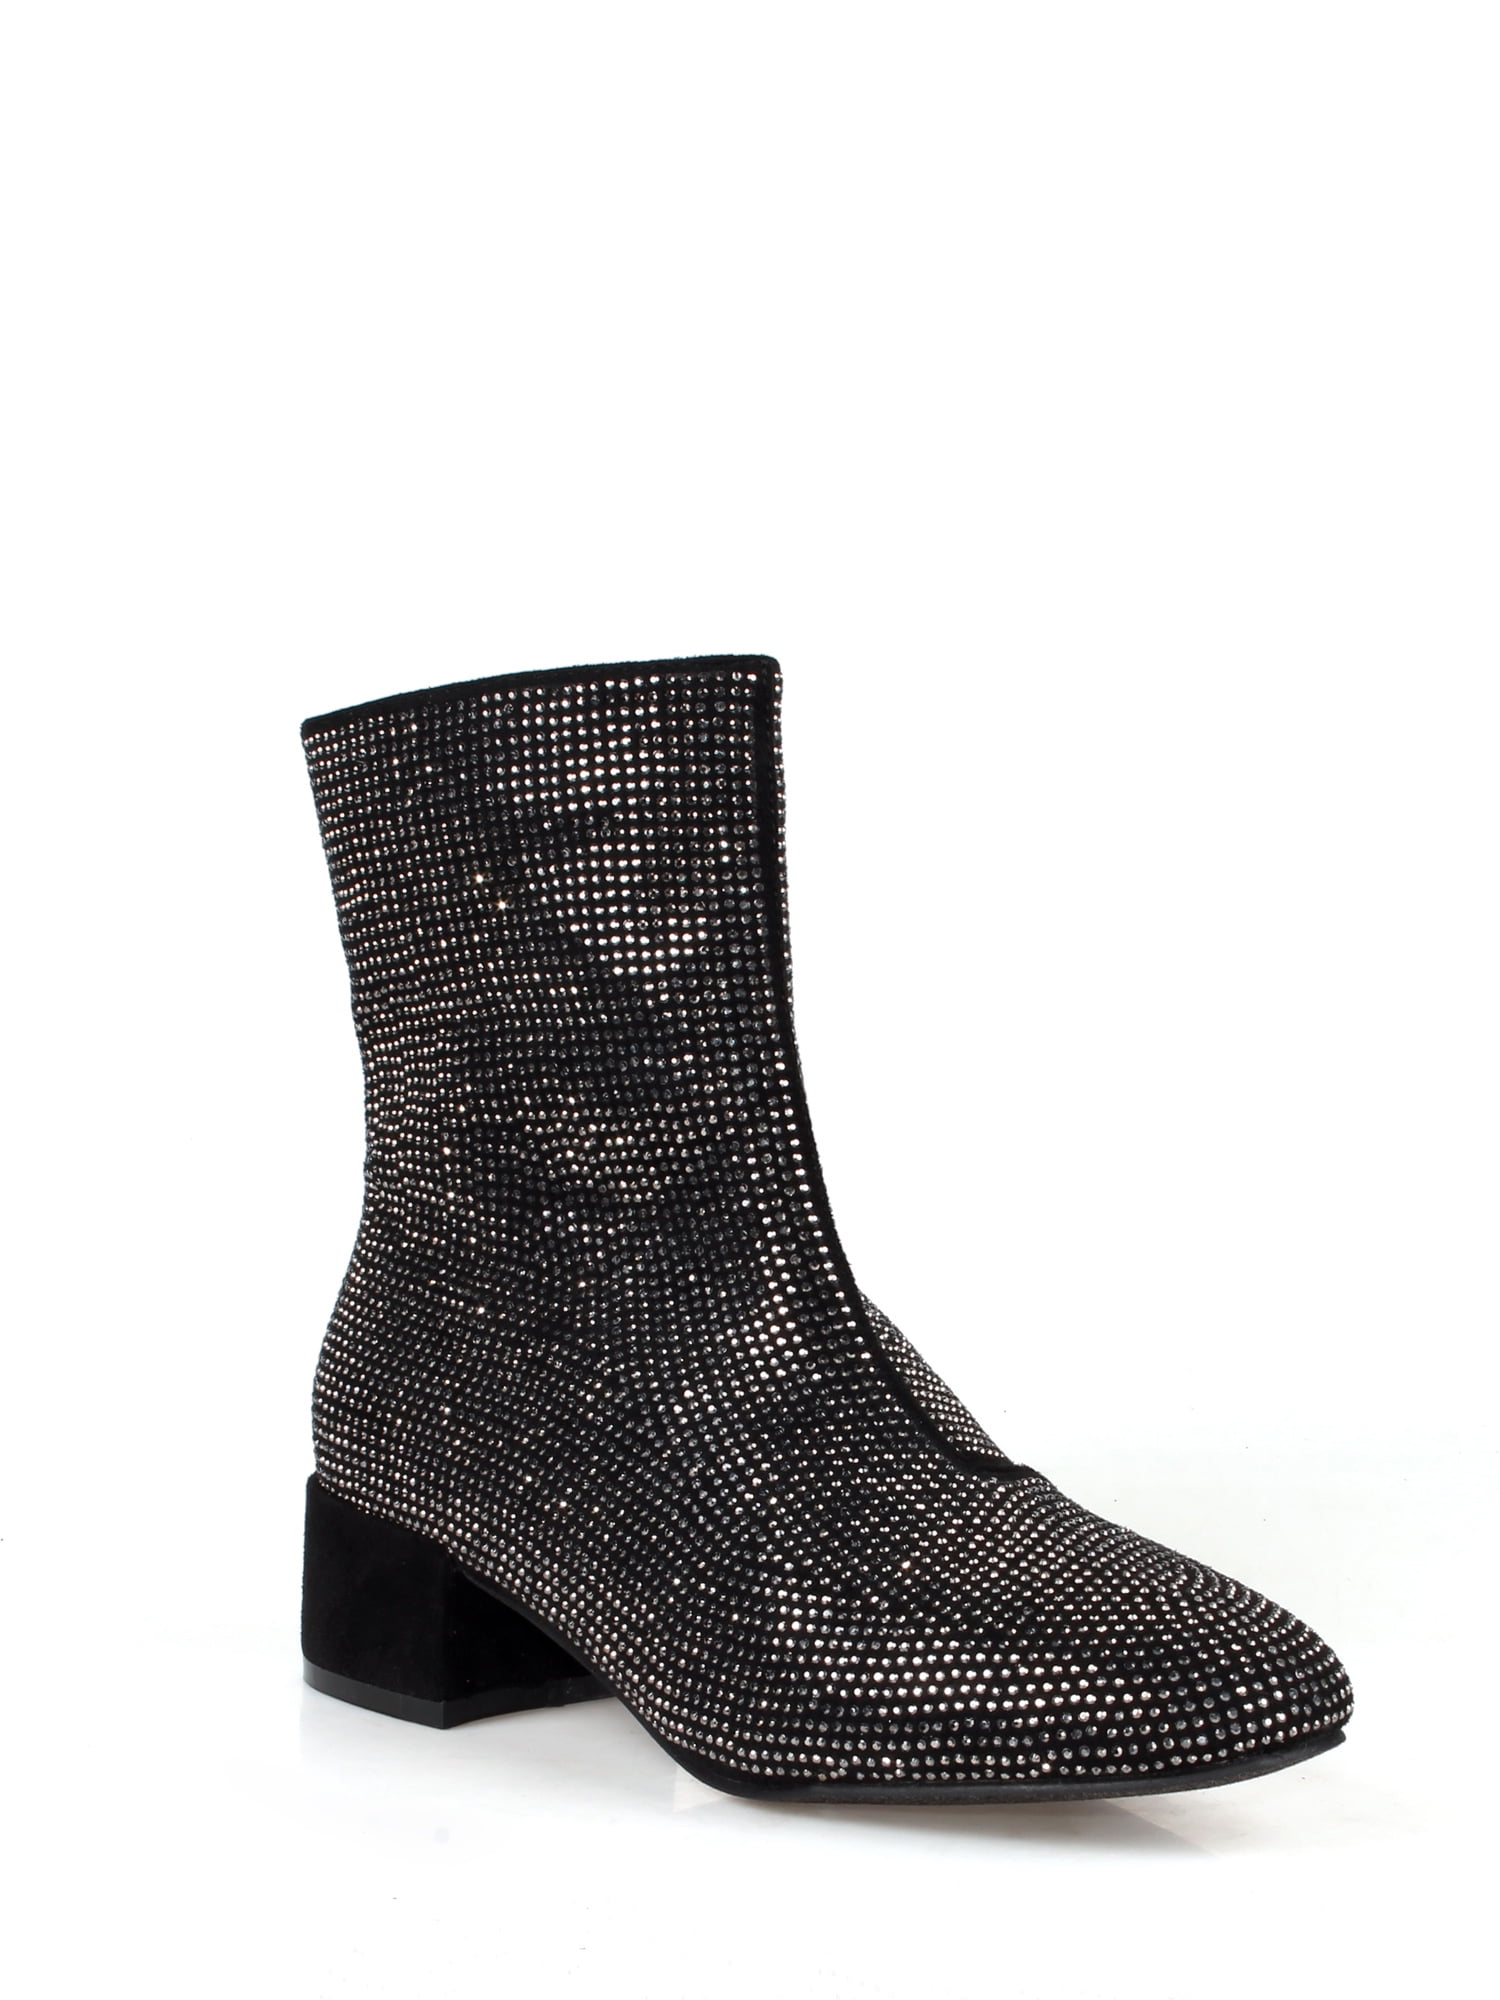 Women's Zip High Heel Faux Suede Mid Calf Boots Party Shoes AU Plus Size 2-11 